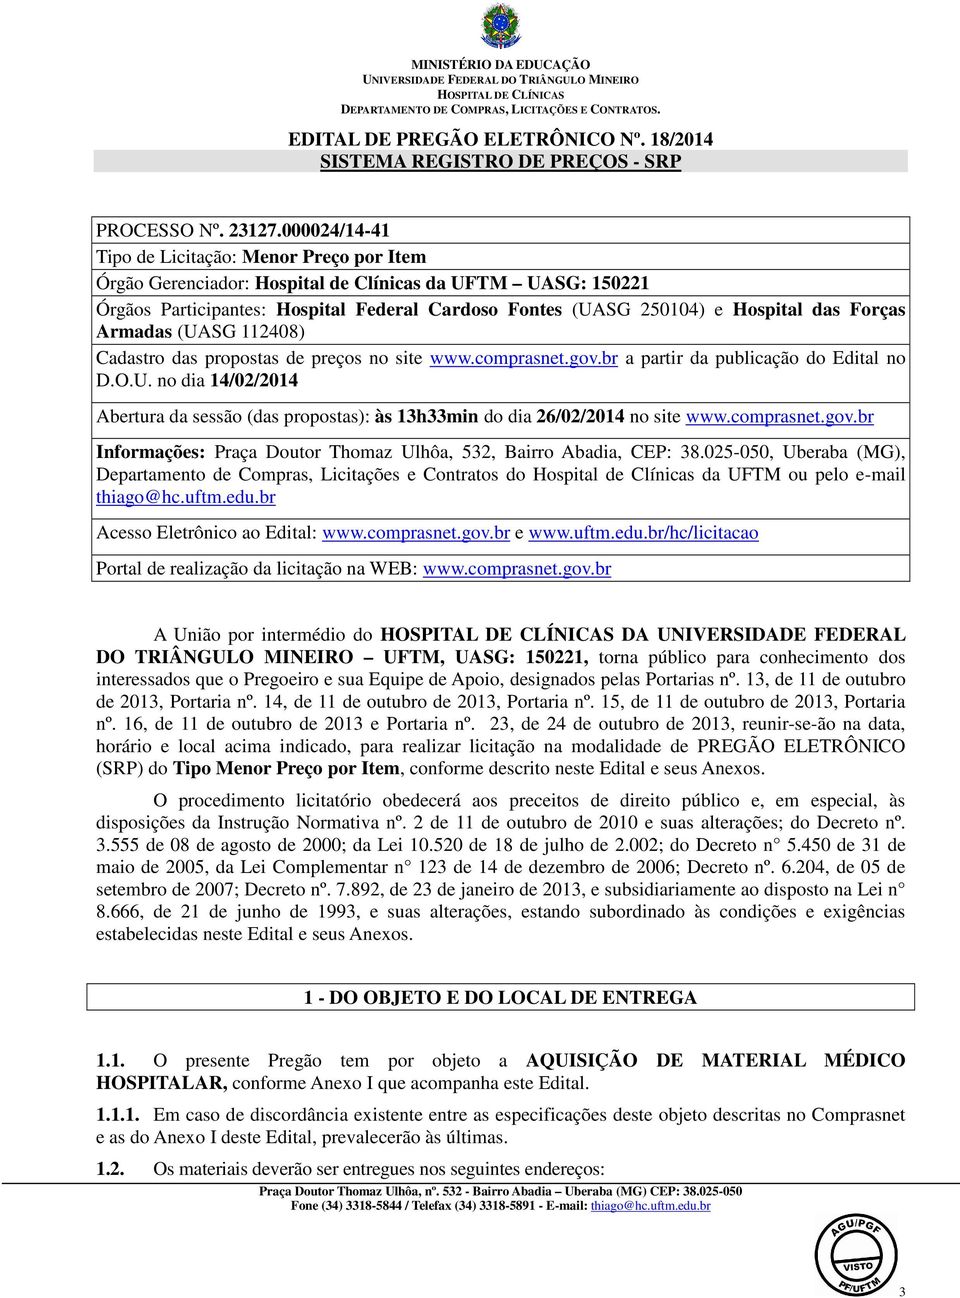 Forças Armadas (UASG 112408) Cadastro das propostas de preços no site www.comprasnet.gov.br a partir da publicação do Edital no D.O.U. no dia 14/02/2014 Abertura da sessão (das propostas): às 13h33min do dia 26/02/2014 no site www.